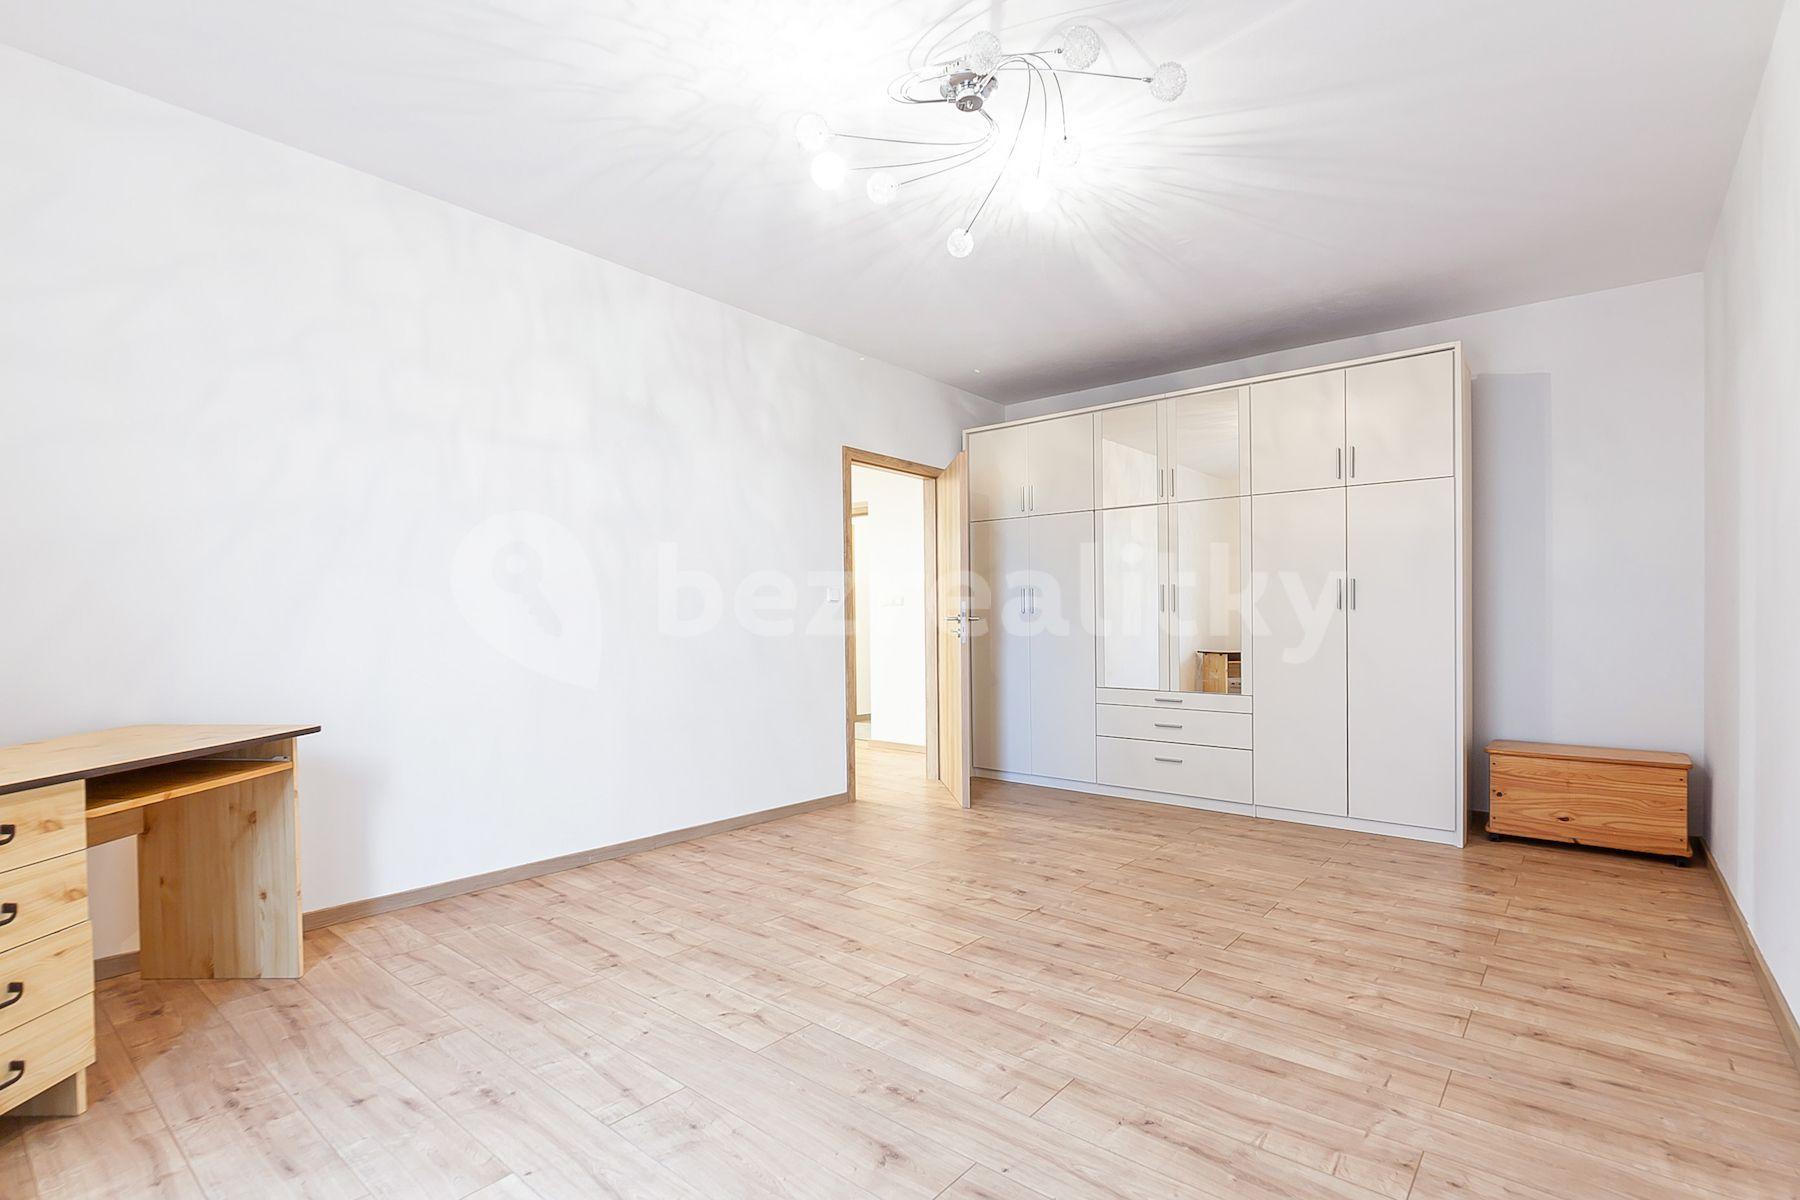 1 bedroom with open-plan kitchen flat for sale, 66 m², Cedrová, Jesenice, Středočeský Region